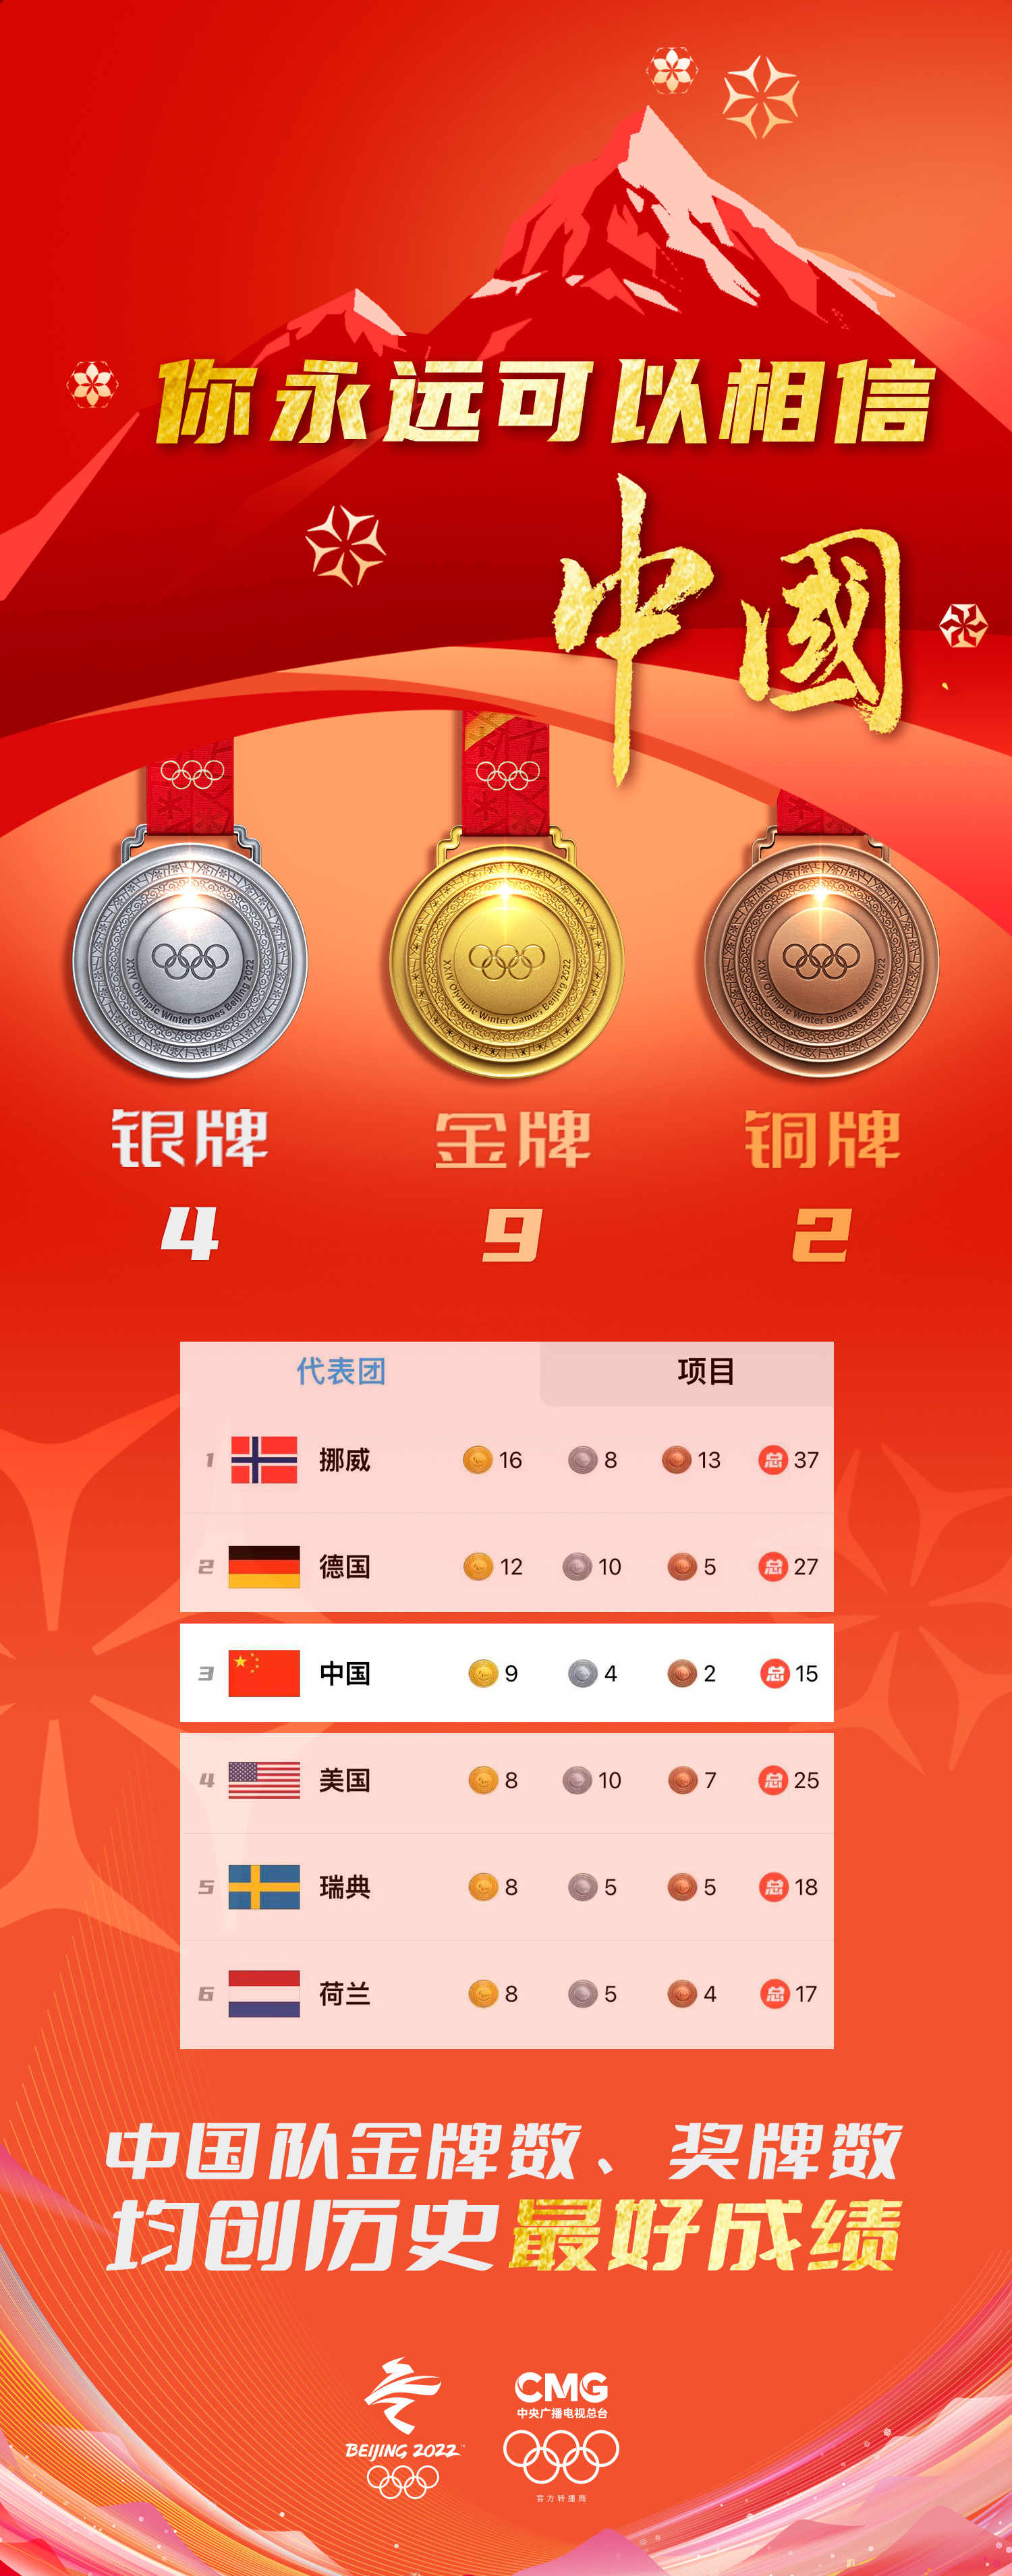 祝愿！中国队位列奖牌榜第三位 金牌数、奖牌数均创历史最佳下场